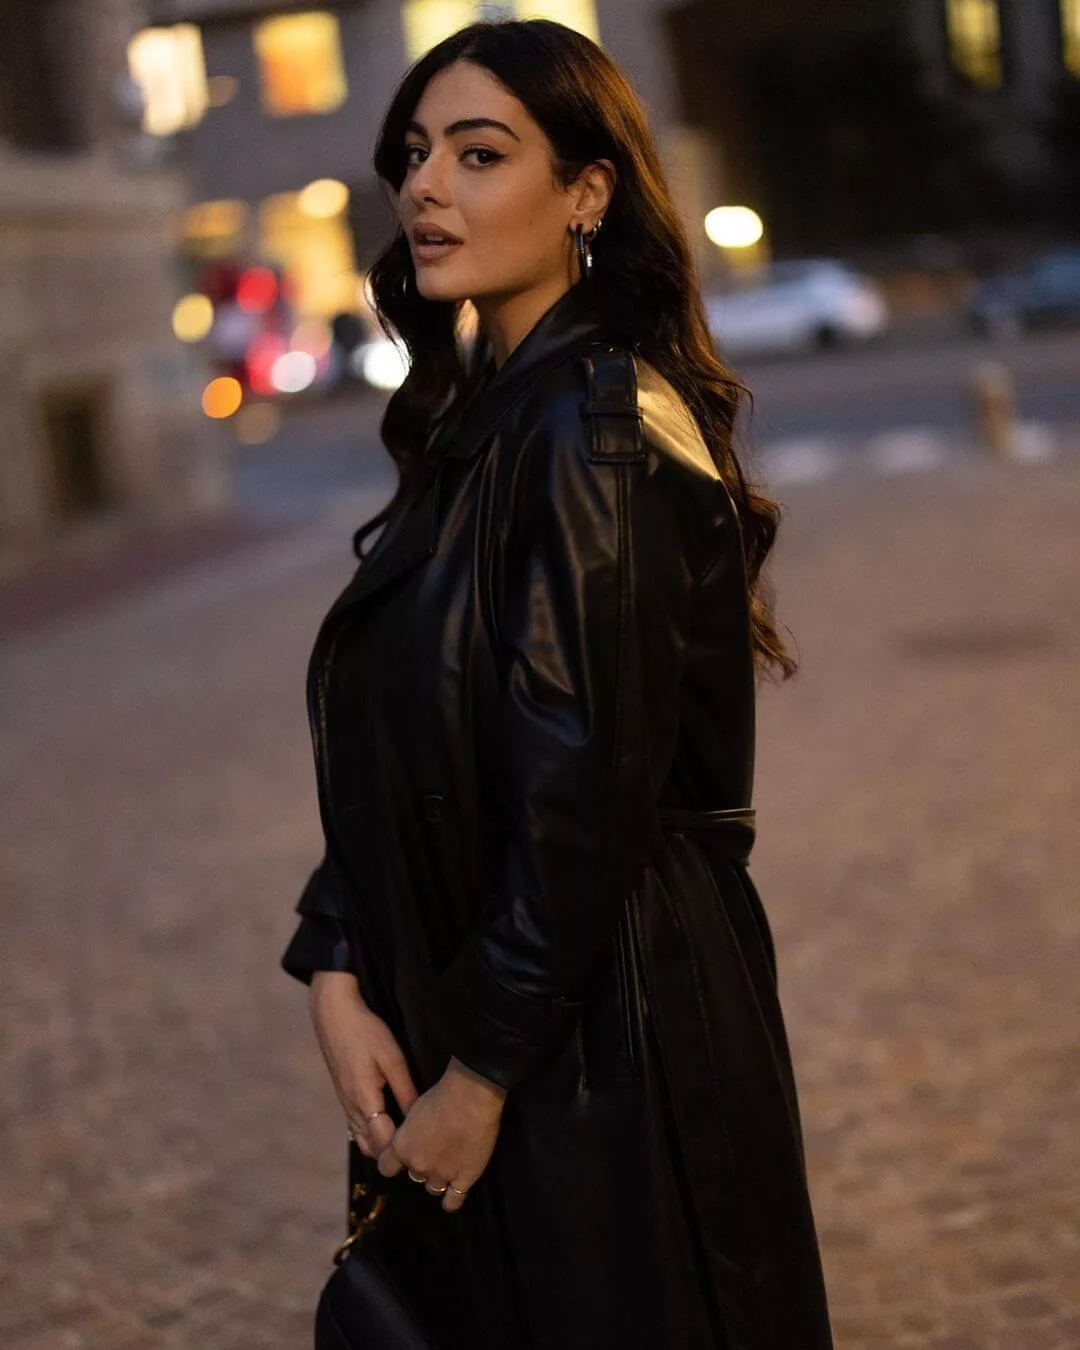 Paola in a black dress sidelook